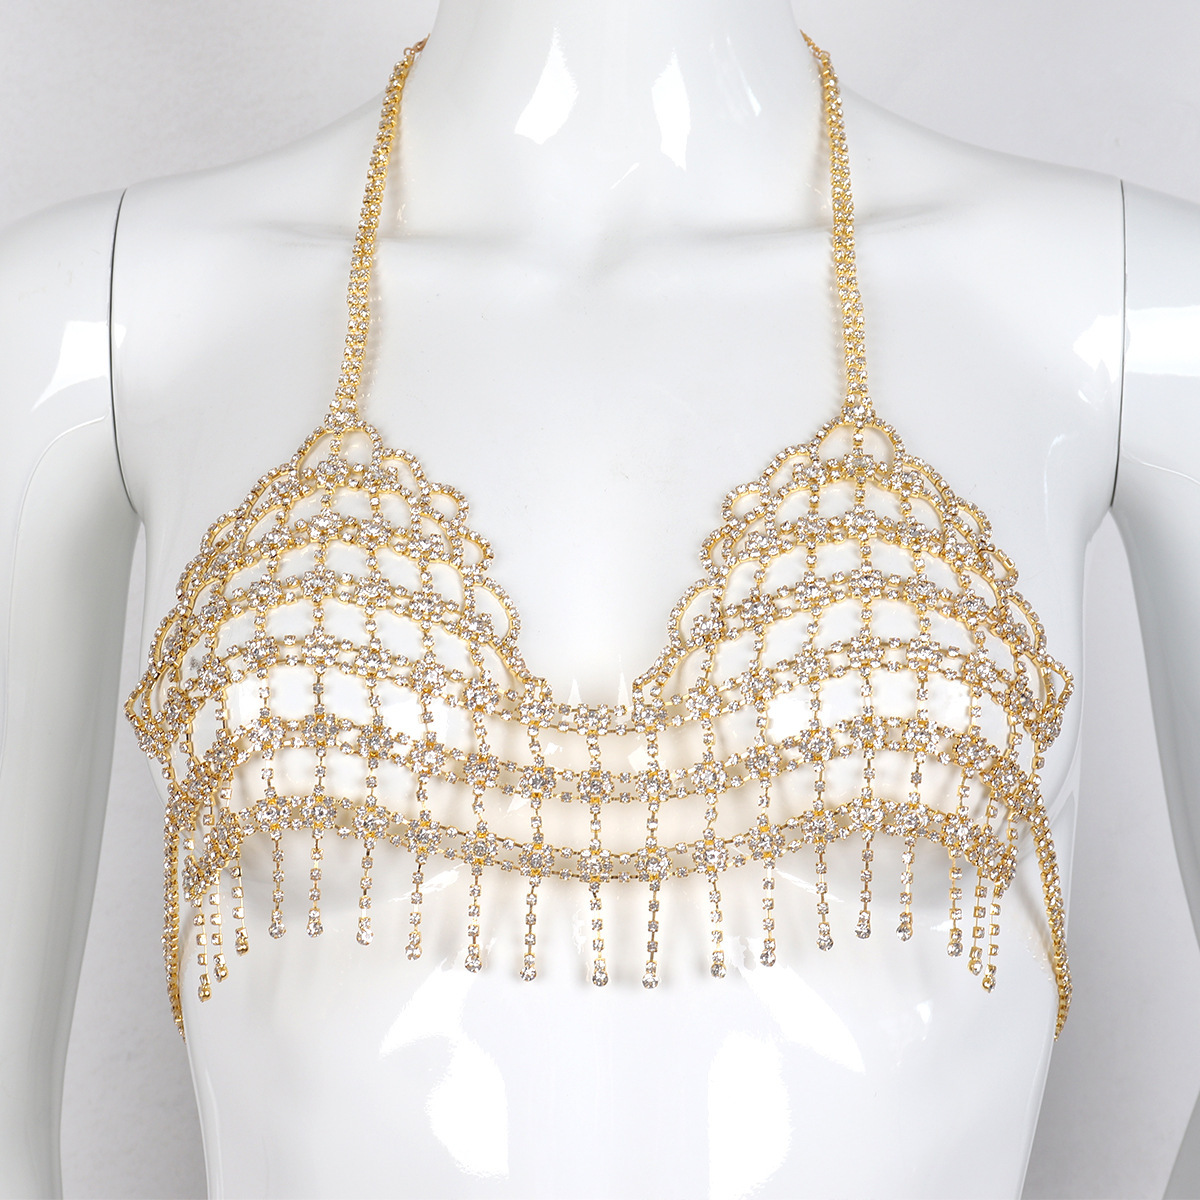 Body Chain Top/bra/silver Chain Bra/body Jewelry/bra Jewelry/gold